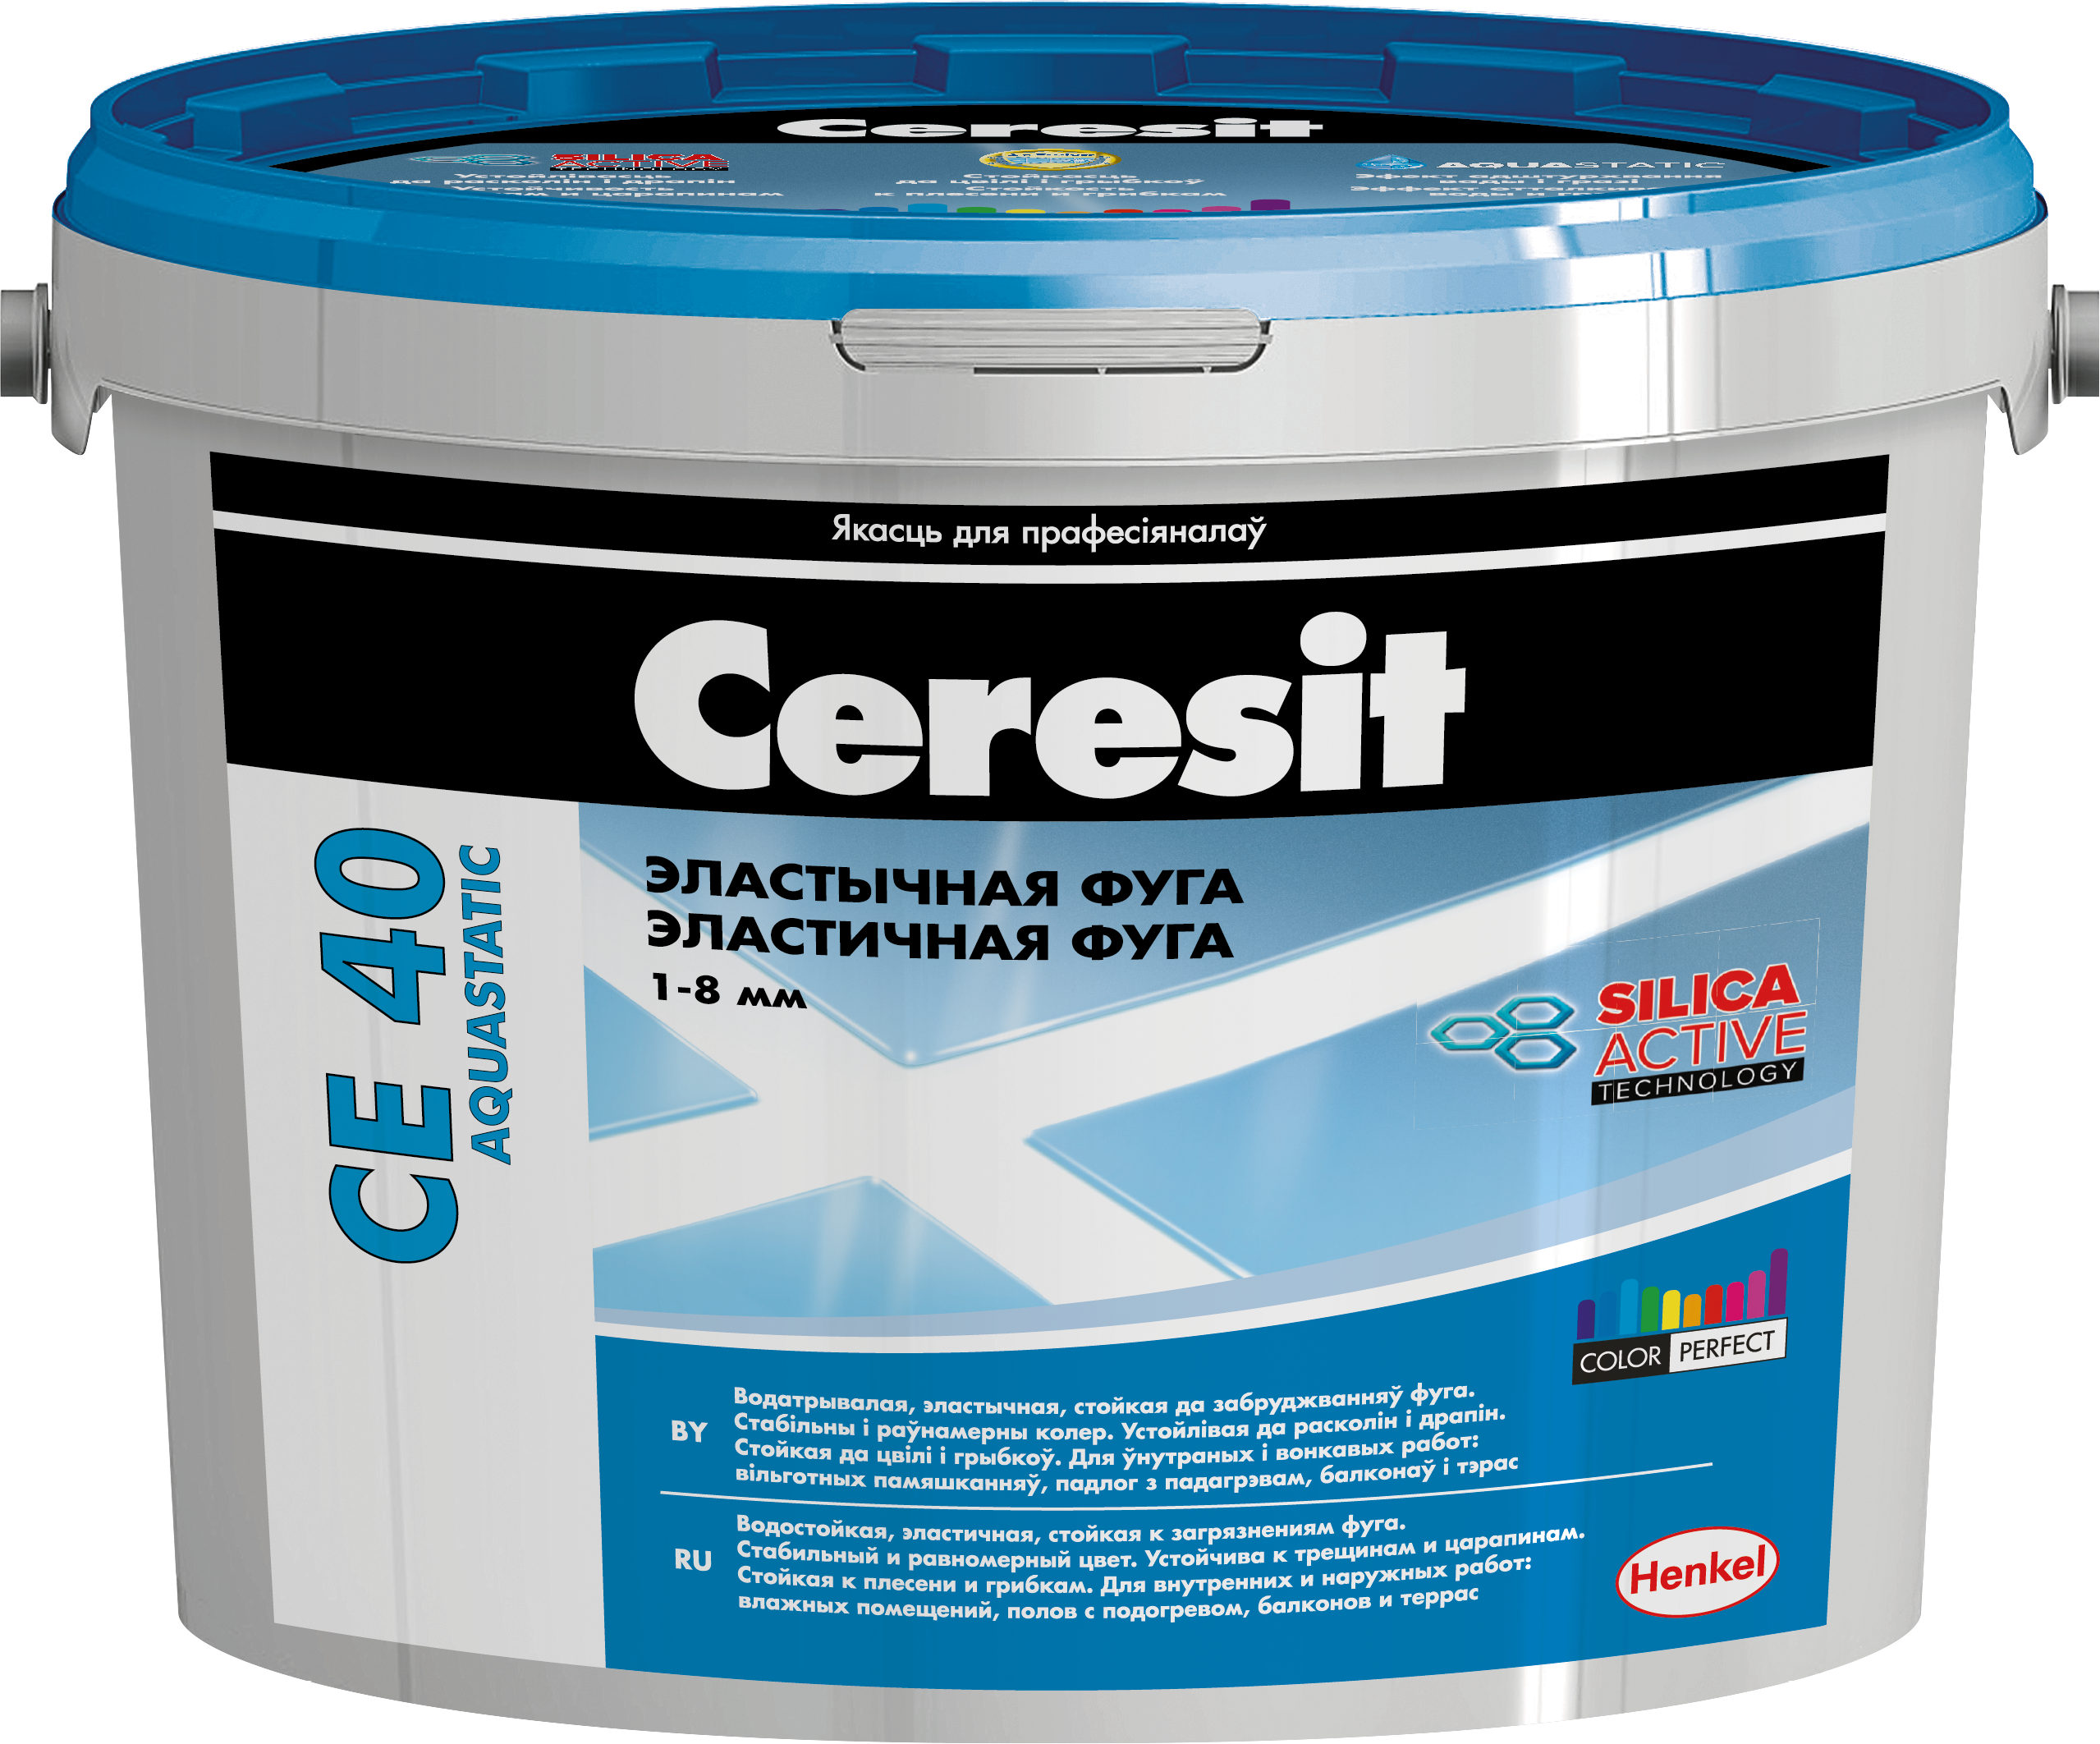 Фуга Ceresit CЕ-40 aquastatic 13 антрацит, 5 кг  - купить